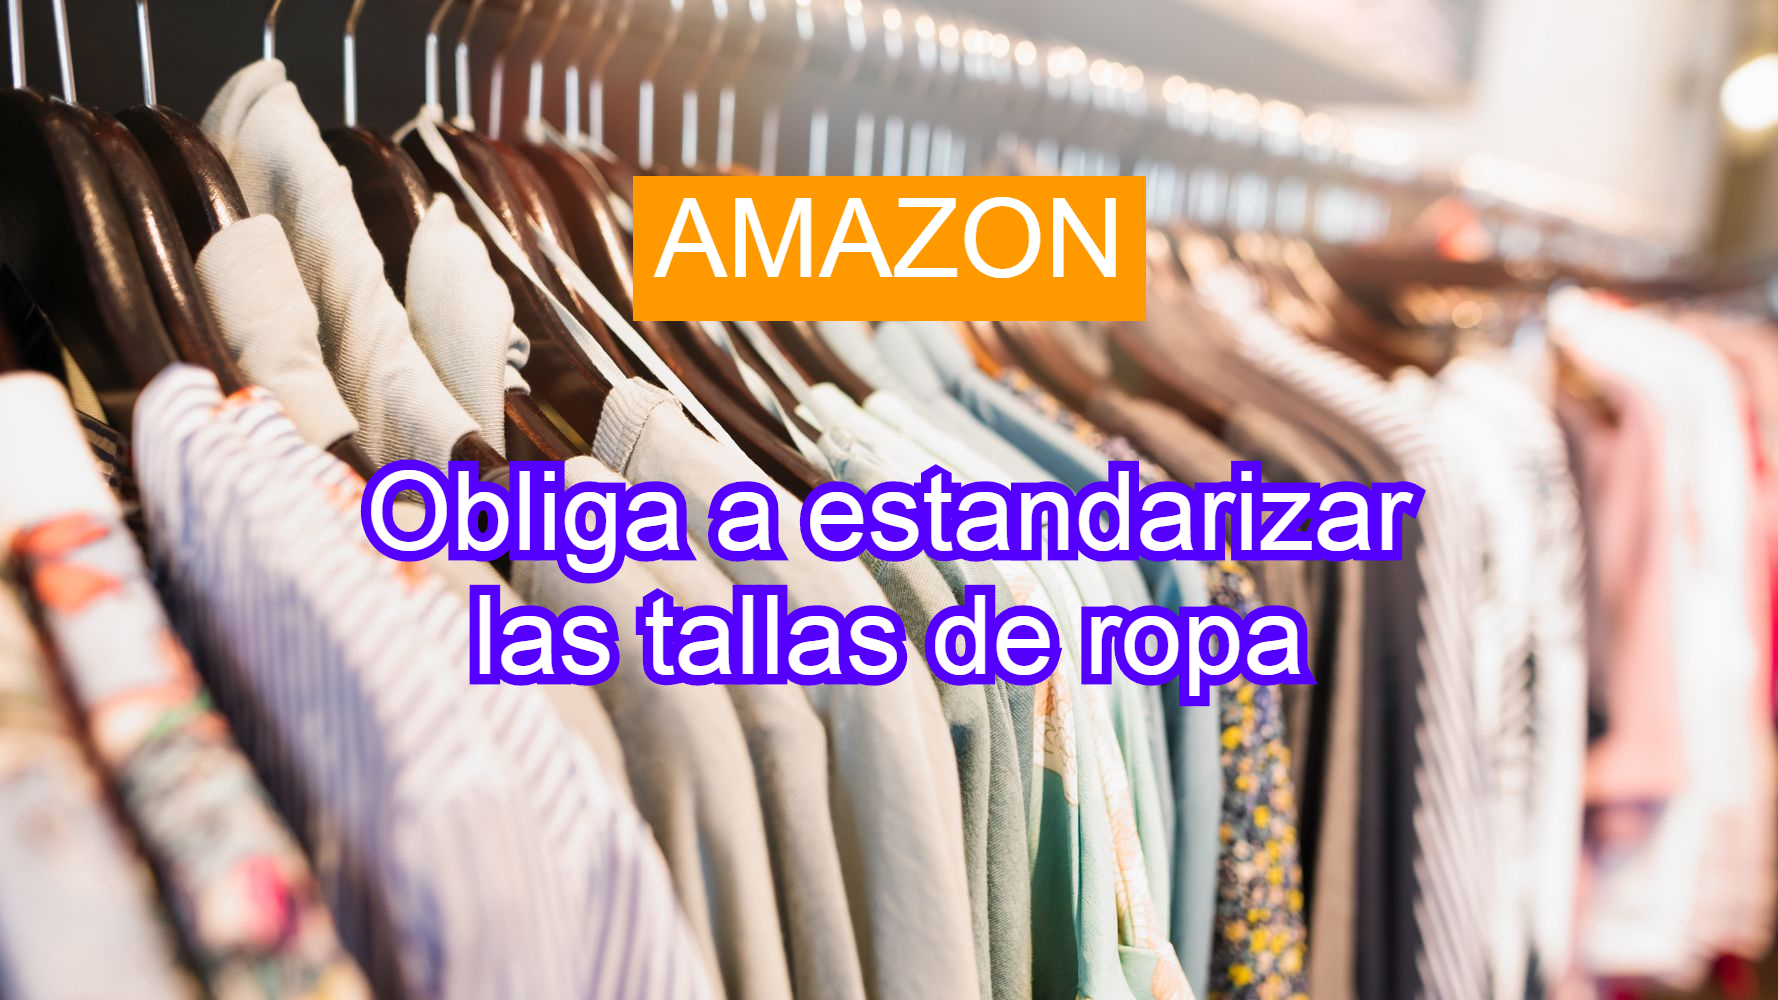 Amazon estandarizará las tallas de ropa obligatoriamente a partir del 31 de  agosto - ROICOS